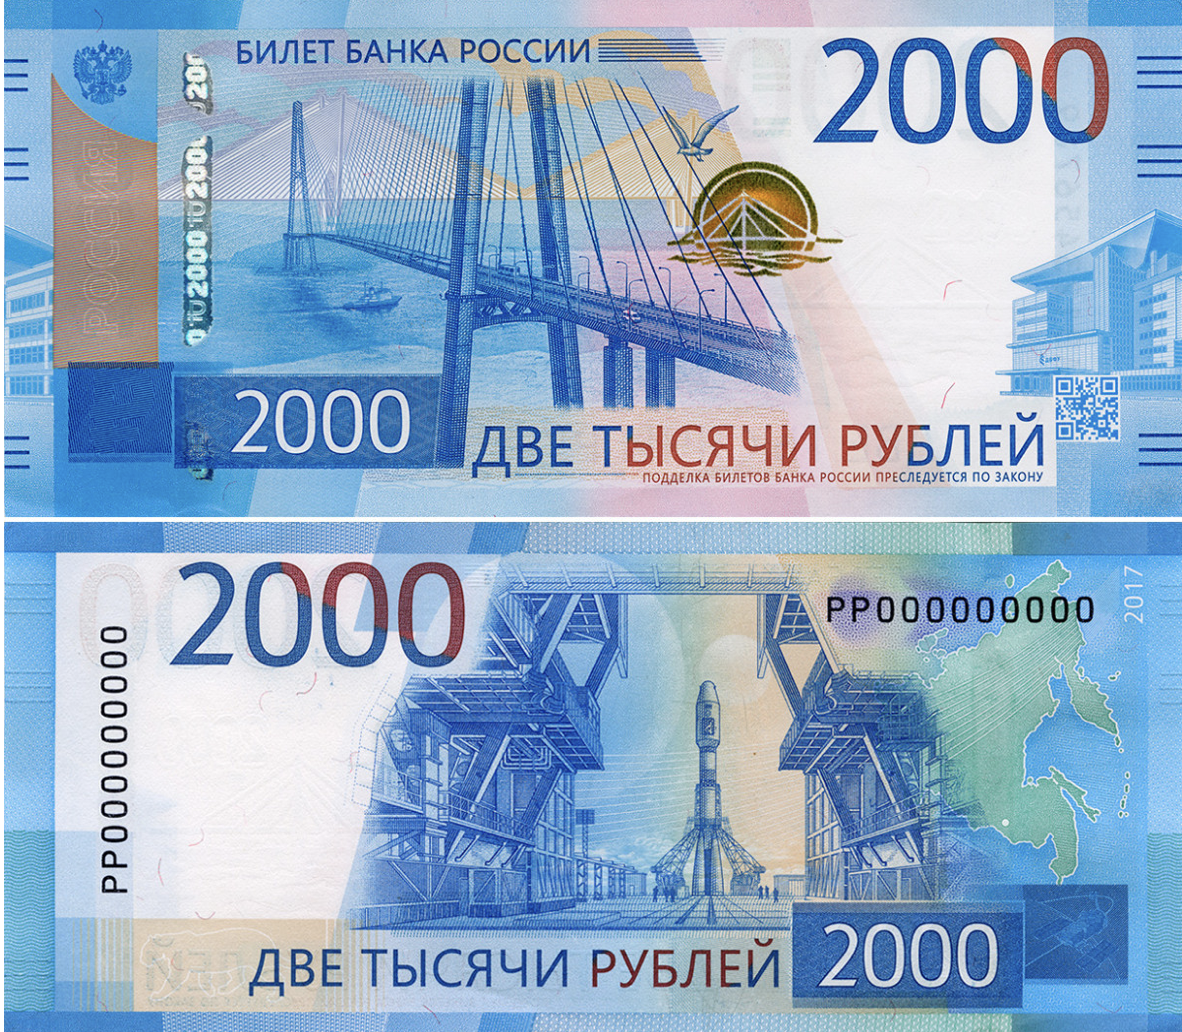 2000 Рублей. Купюра 2000. 2000 Рублей банкнота. Купюра 2000 рублей фото. Рубли поменяются